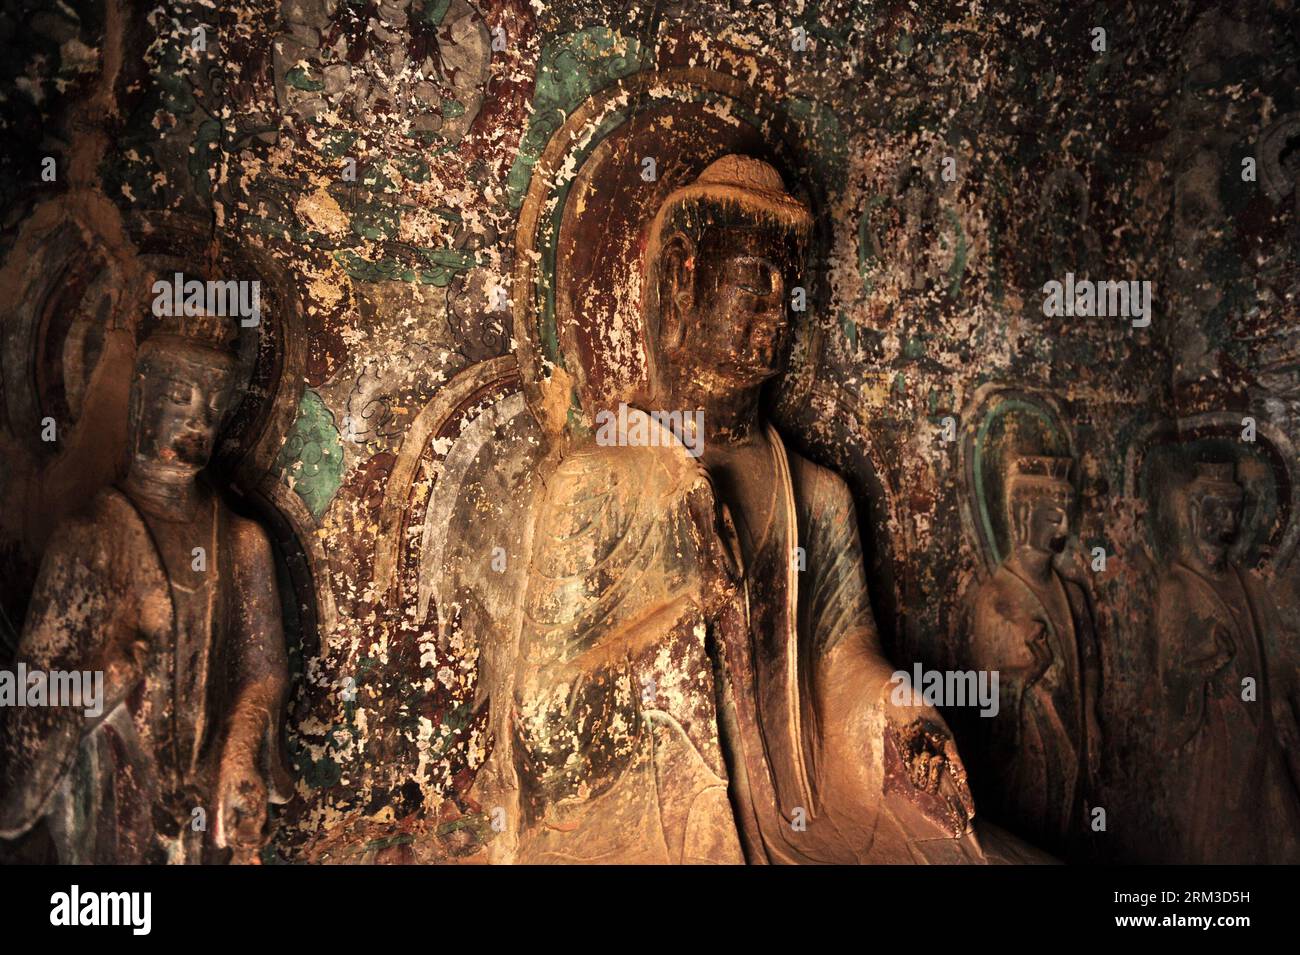 Bildnummer : 60144156 Datum : 17.07.2013 Copyright : imago/Xinhua YONGJING, 17 juillet 2013 (Xinhua) -- des statues bouddhistes sont vues dans les grottes du temple Bingling dans le comté de Yongjing, province du Gansu au nord-ouest de la Chine, 17 juillet 2013. Répertoriées comme faisant partie de l'ancienne route de la soie pour le candidat au patrimoine mondial, les grottes seront examinées par des experts de l'Organisation des Nations Unies pour l'éducation, la science et la culture après la rénovation d'une statue géante de Bouddha datant de plus de 1 000 ans à la dynastie Tang a été achevée récemment. Les grottes du temple Bingling, remplies de statues bouddhistes, de stupas et de peintures murales, étaient Banque D'Images